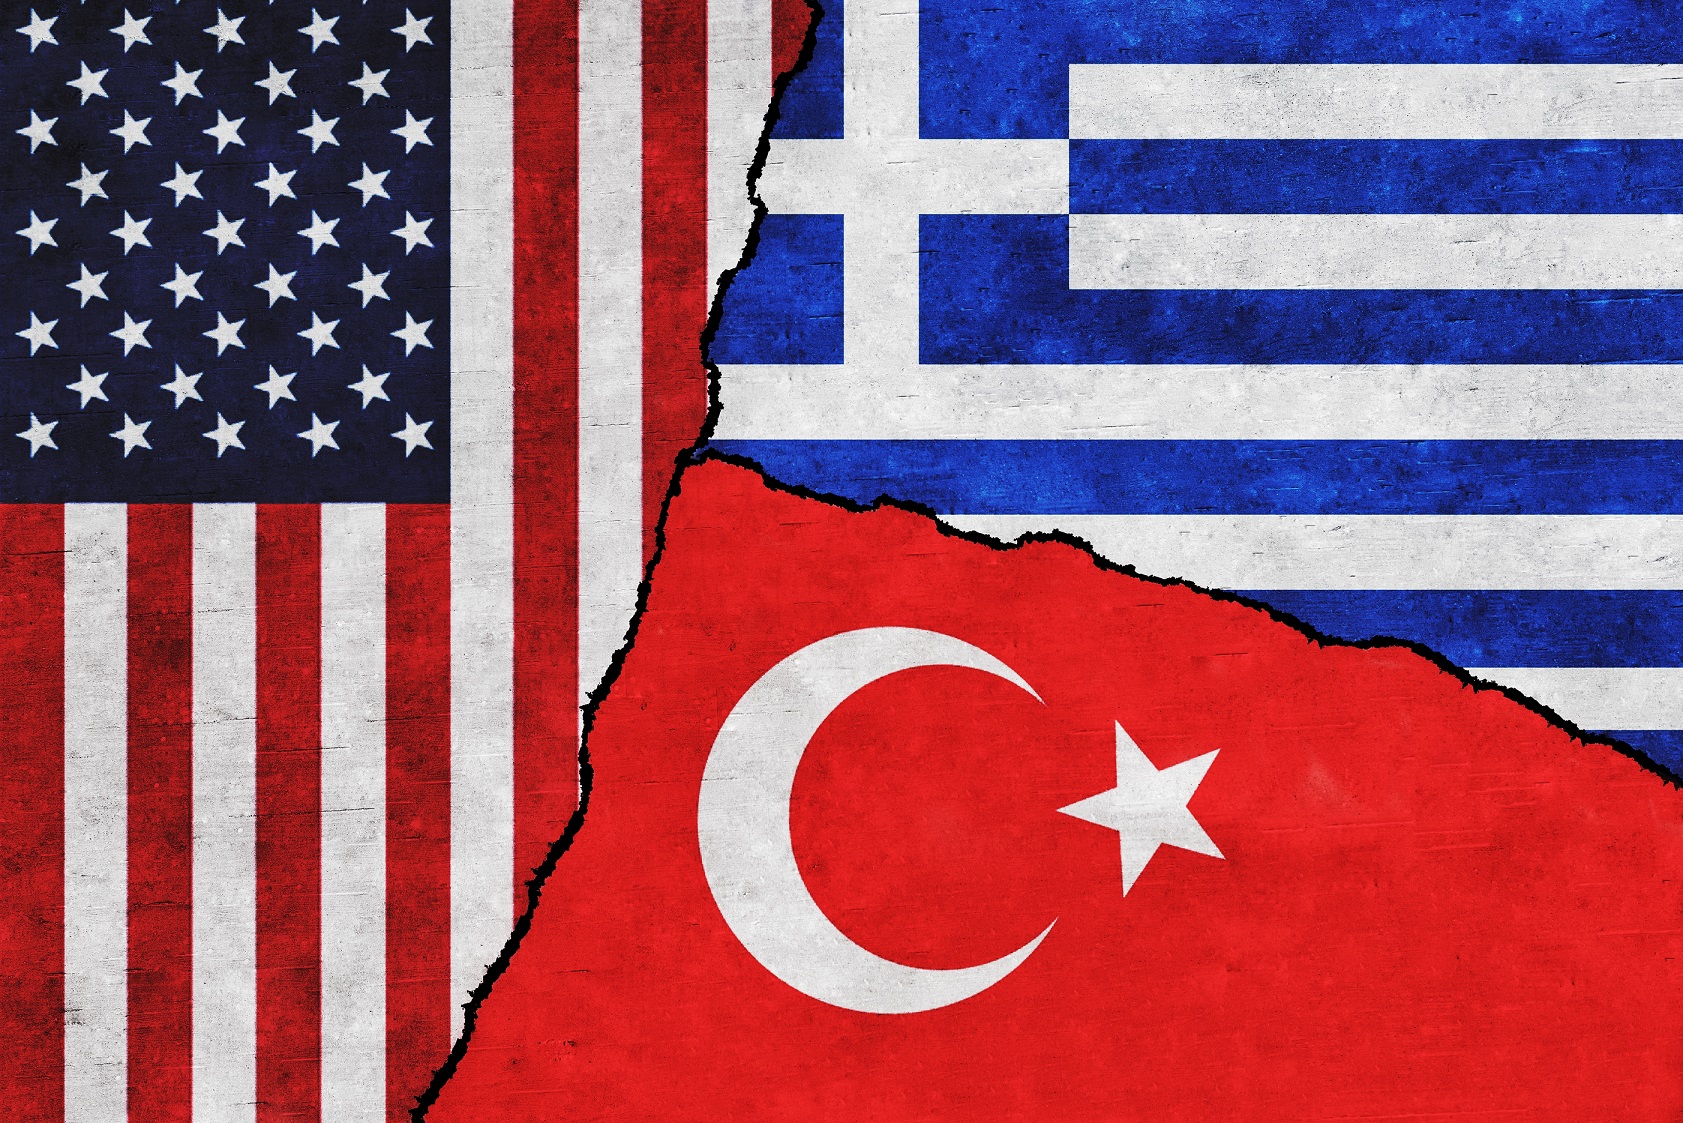 Հունաստանի ինքնիշխանությունը կղզիների նկատմամբ կասկածի ենթակա չէ. ԱՄՆ-ի պատասխանը՝ Թուրքիային